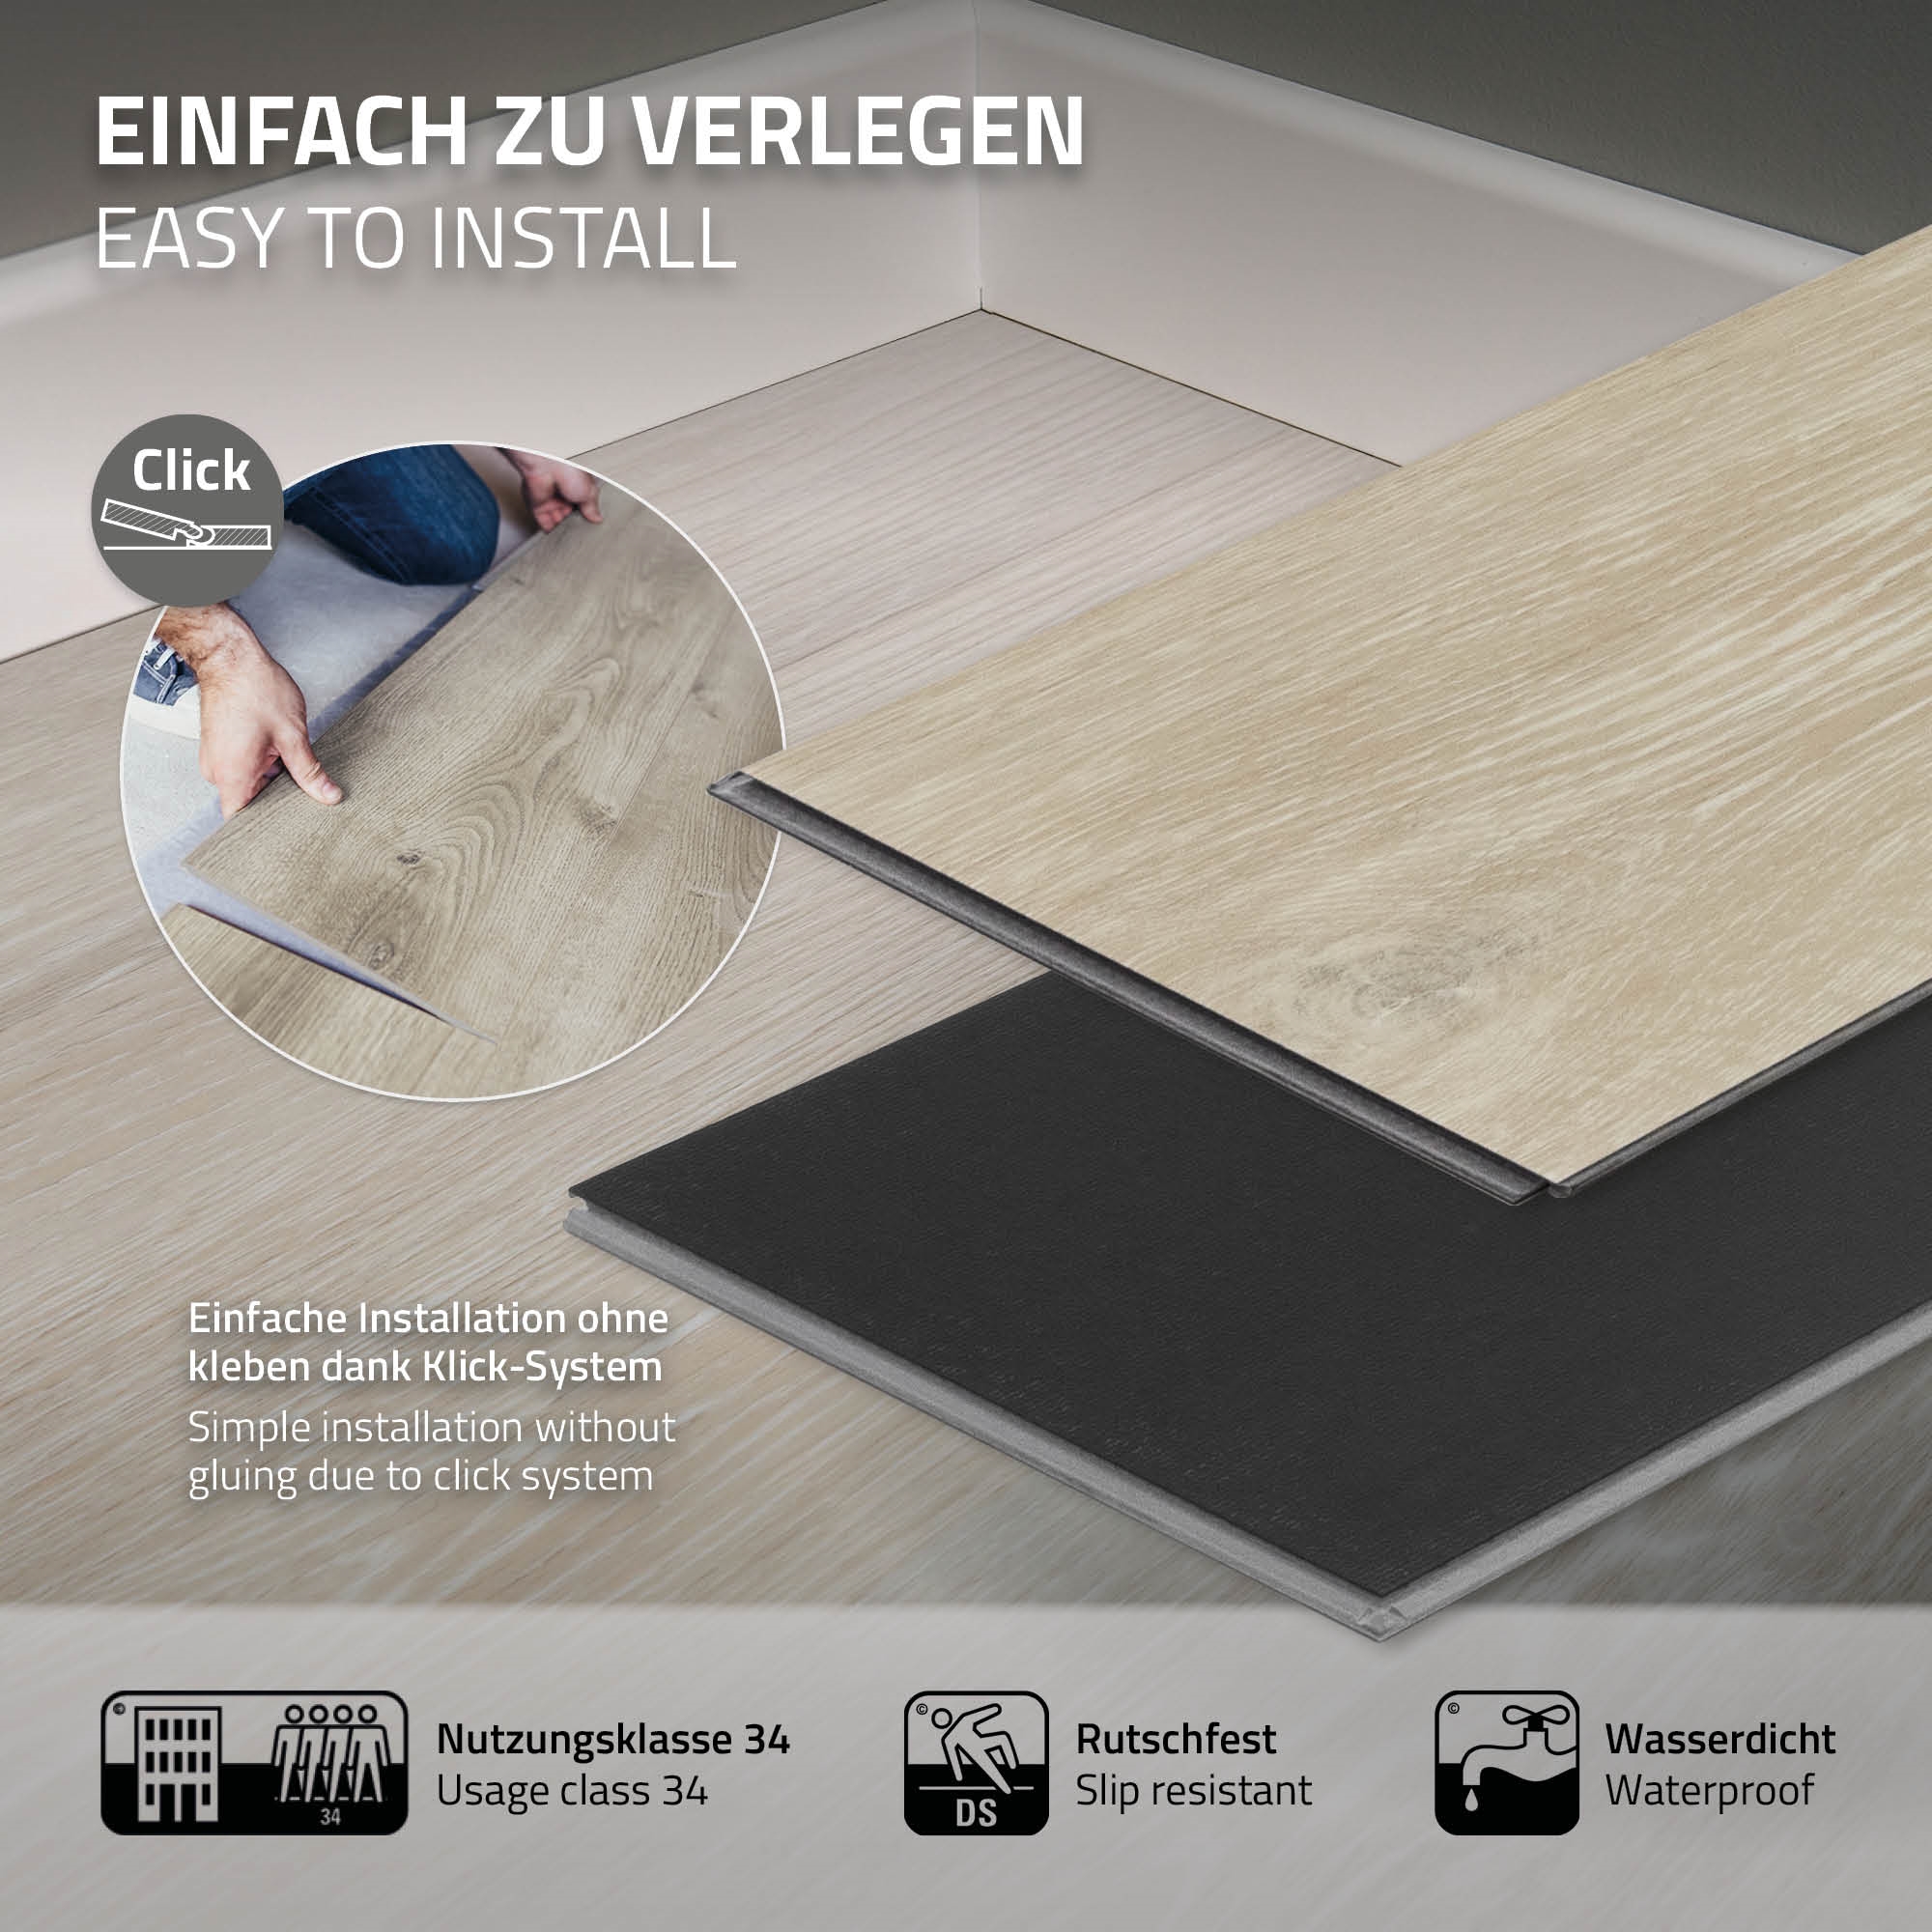 1,54-7,7 m² Click Vinylboden 4,2mm Nutzschicht Wasserfest Bodenbelag Laminat PVC